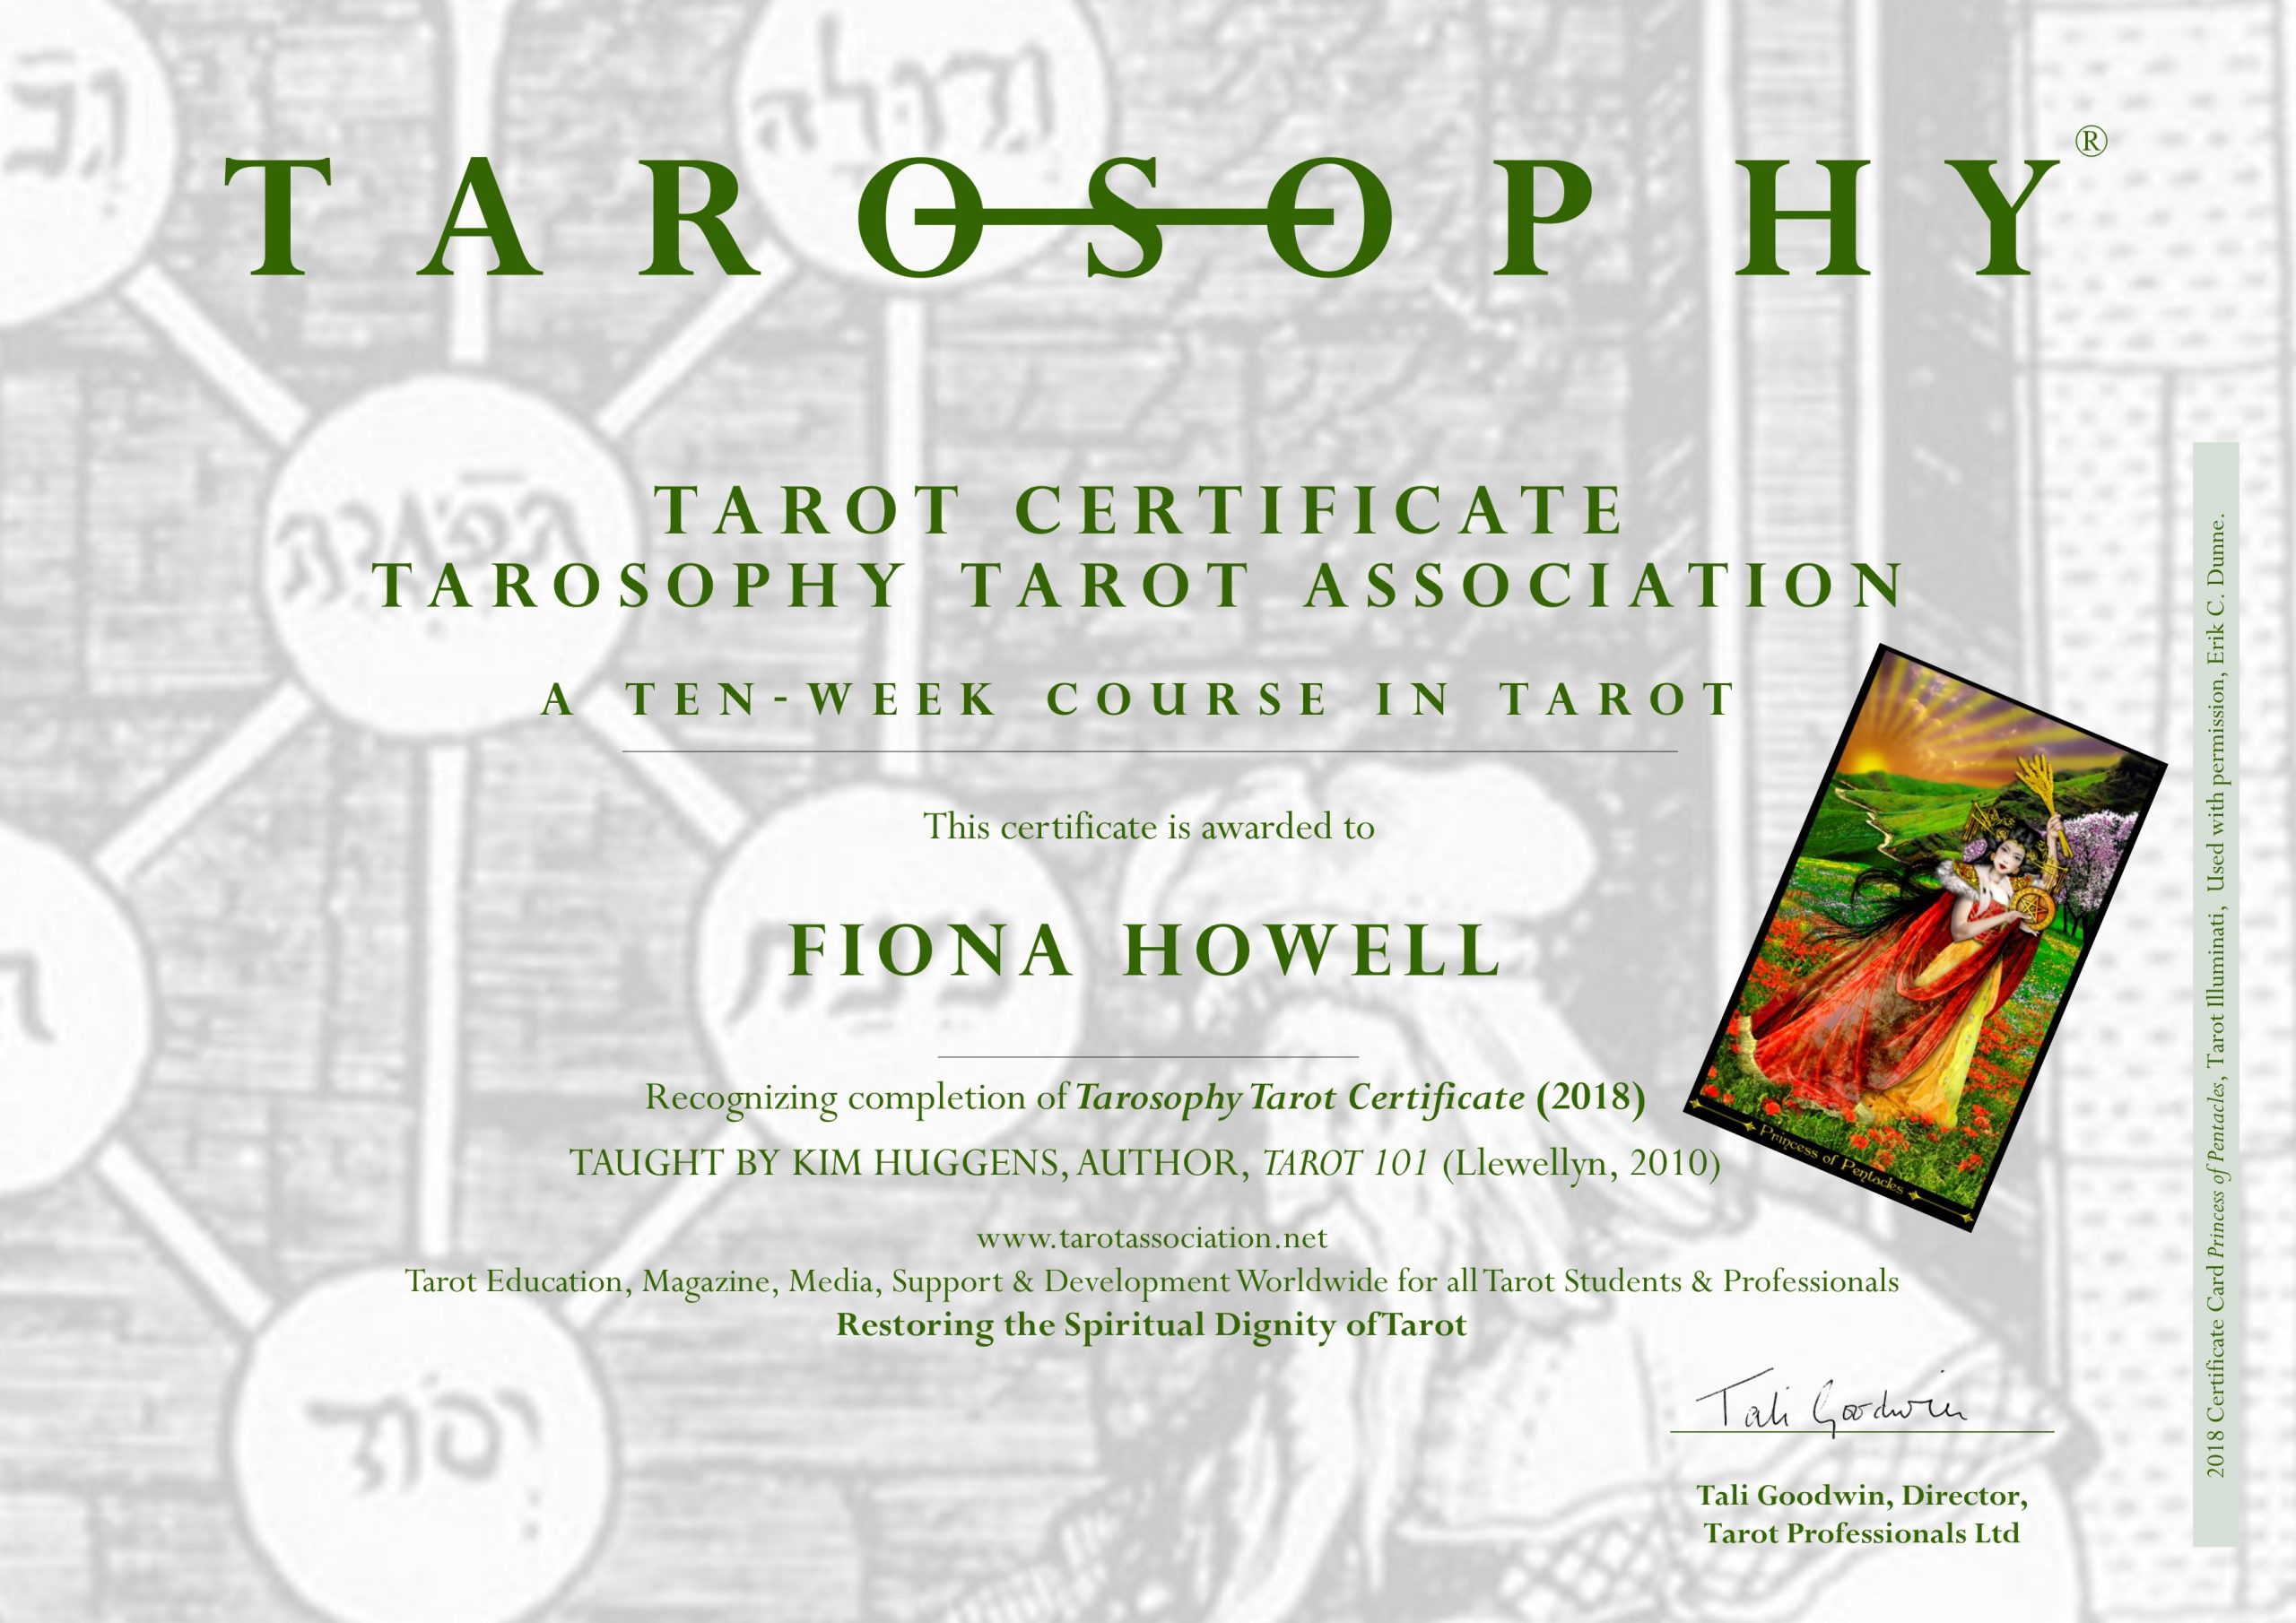 Tarosophy Tarot Certificate & Tarot Diploma The Tarosophy Tarot